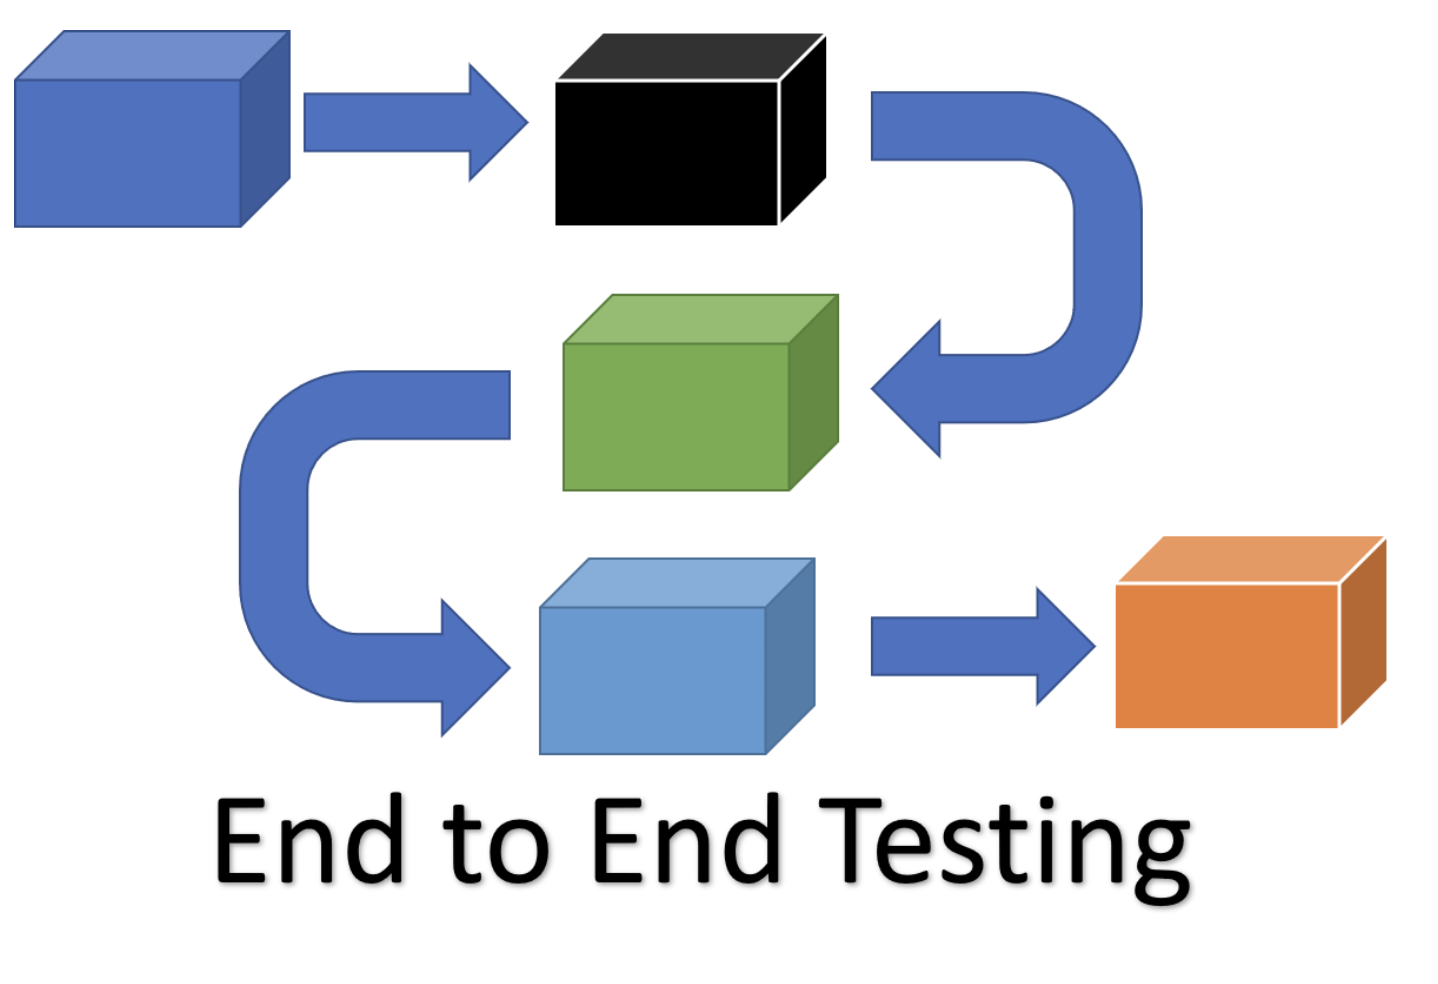 The Purpose of E2E Testing in DevOps